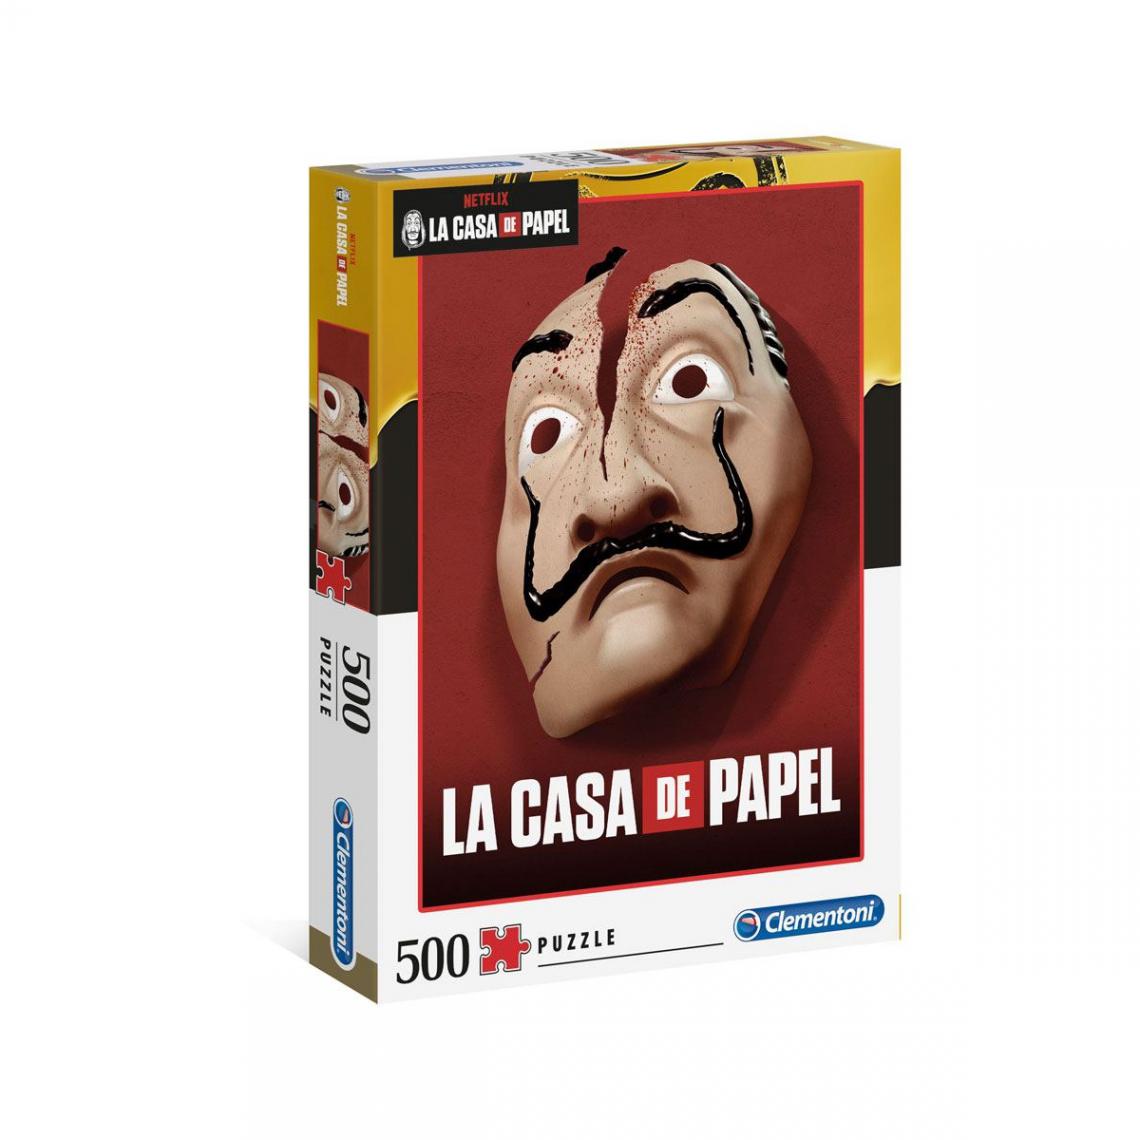 Clementoni - La casa de papel - Puzzle Masque (500 pièces) - Puzzles 3D